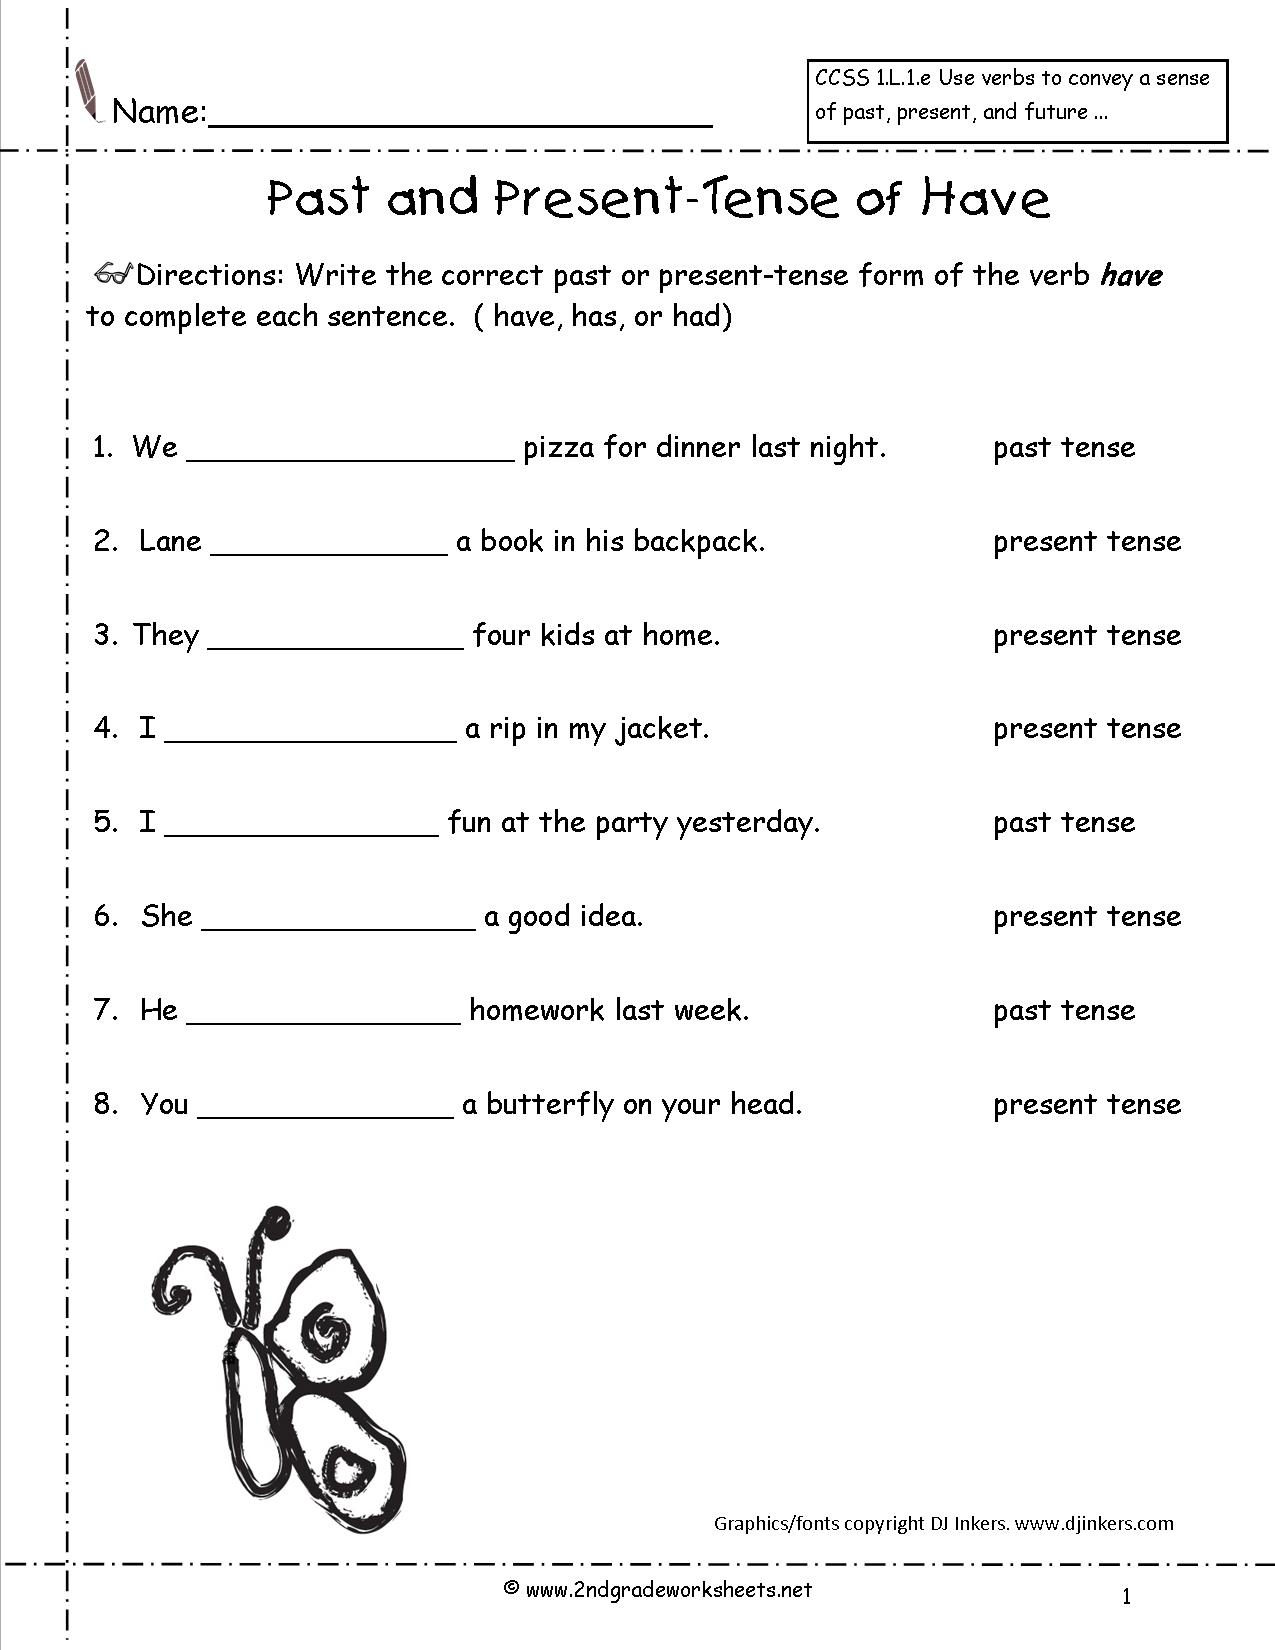 Past Tense Verbs Worksheet